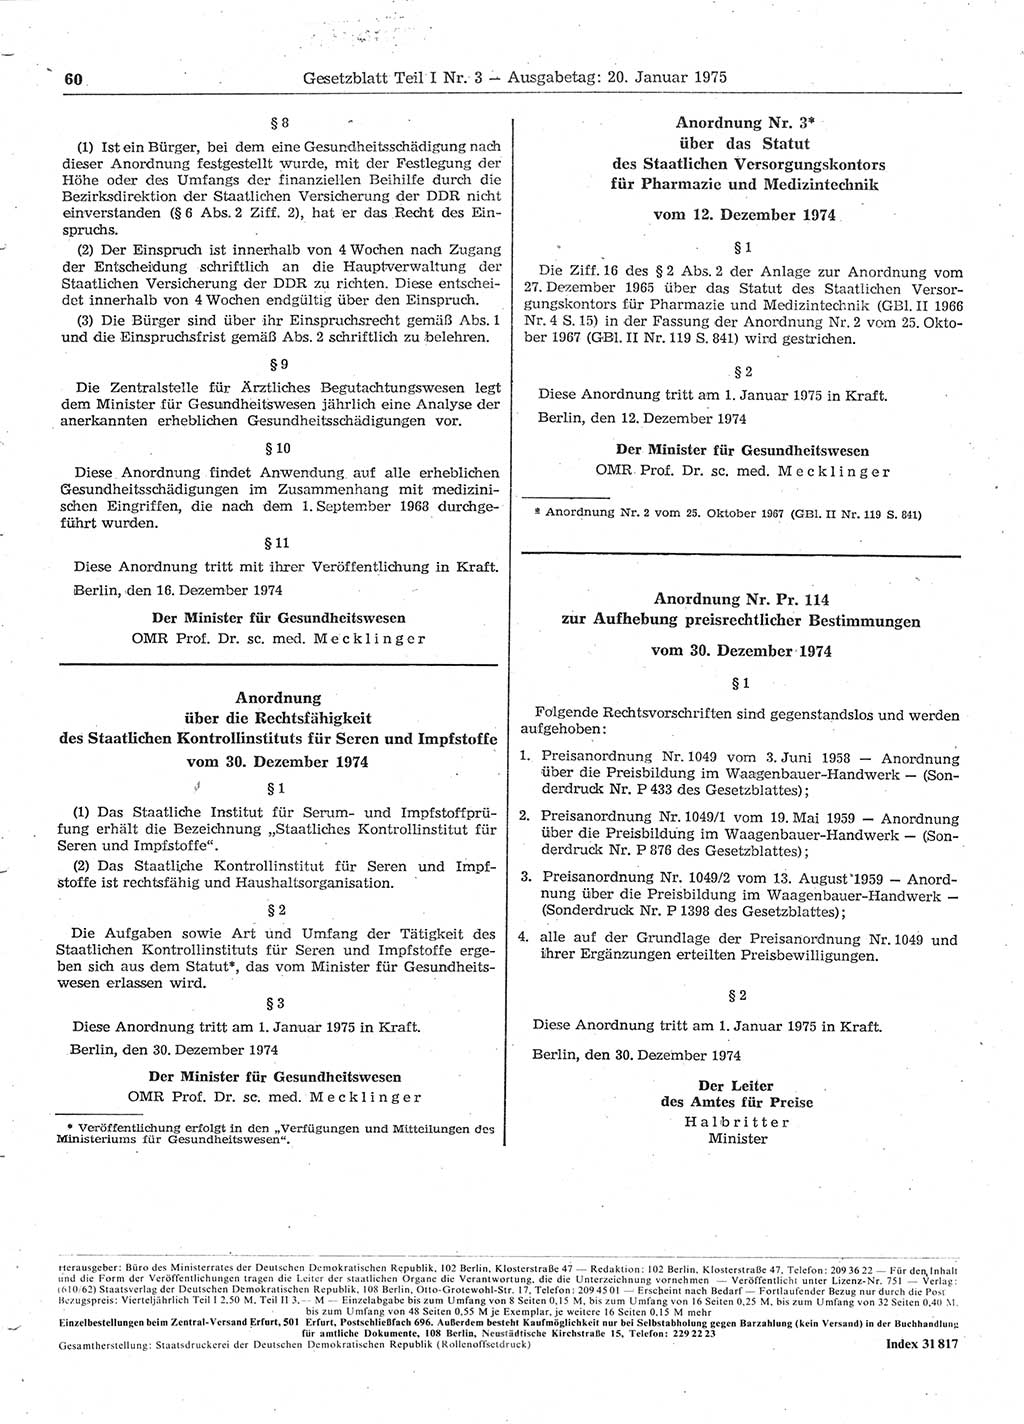 Gesetzblatt (GBl.) der Deutschen Demokratischen Republik (DDR) Teil Ⅰ 1975, Seite 60 (GBl. DDR Ⅰ 1975, S. 60)